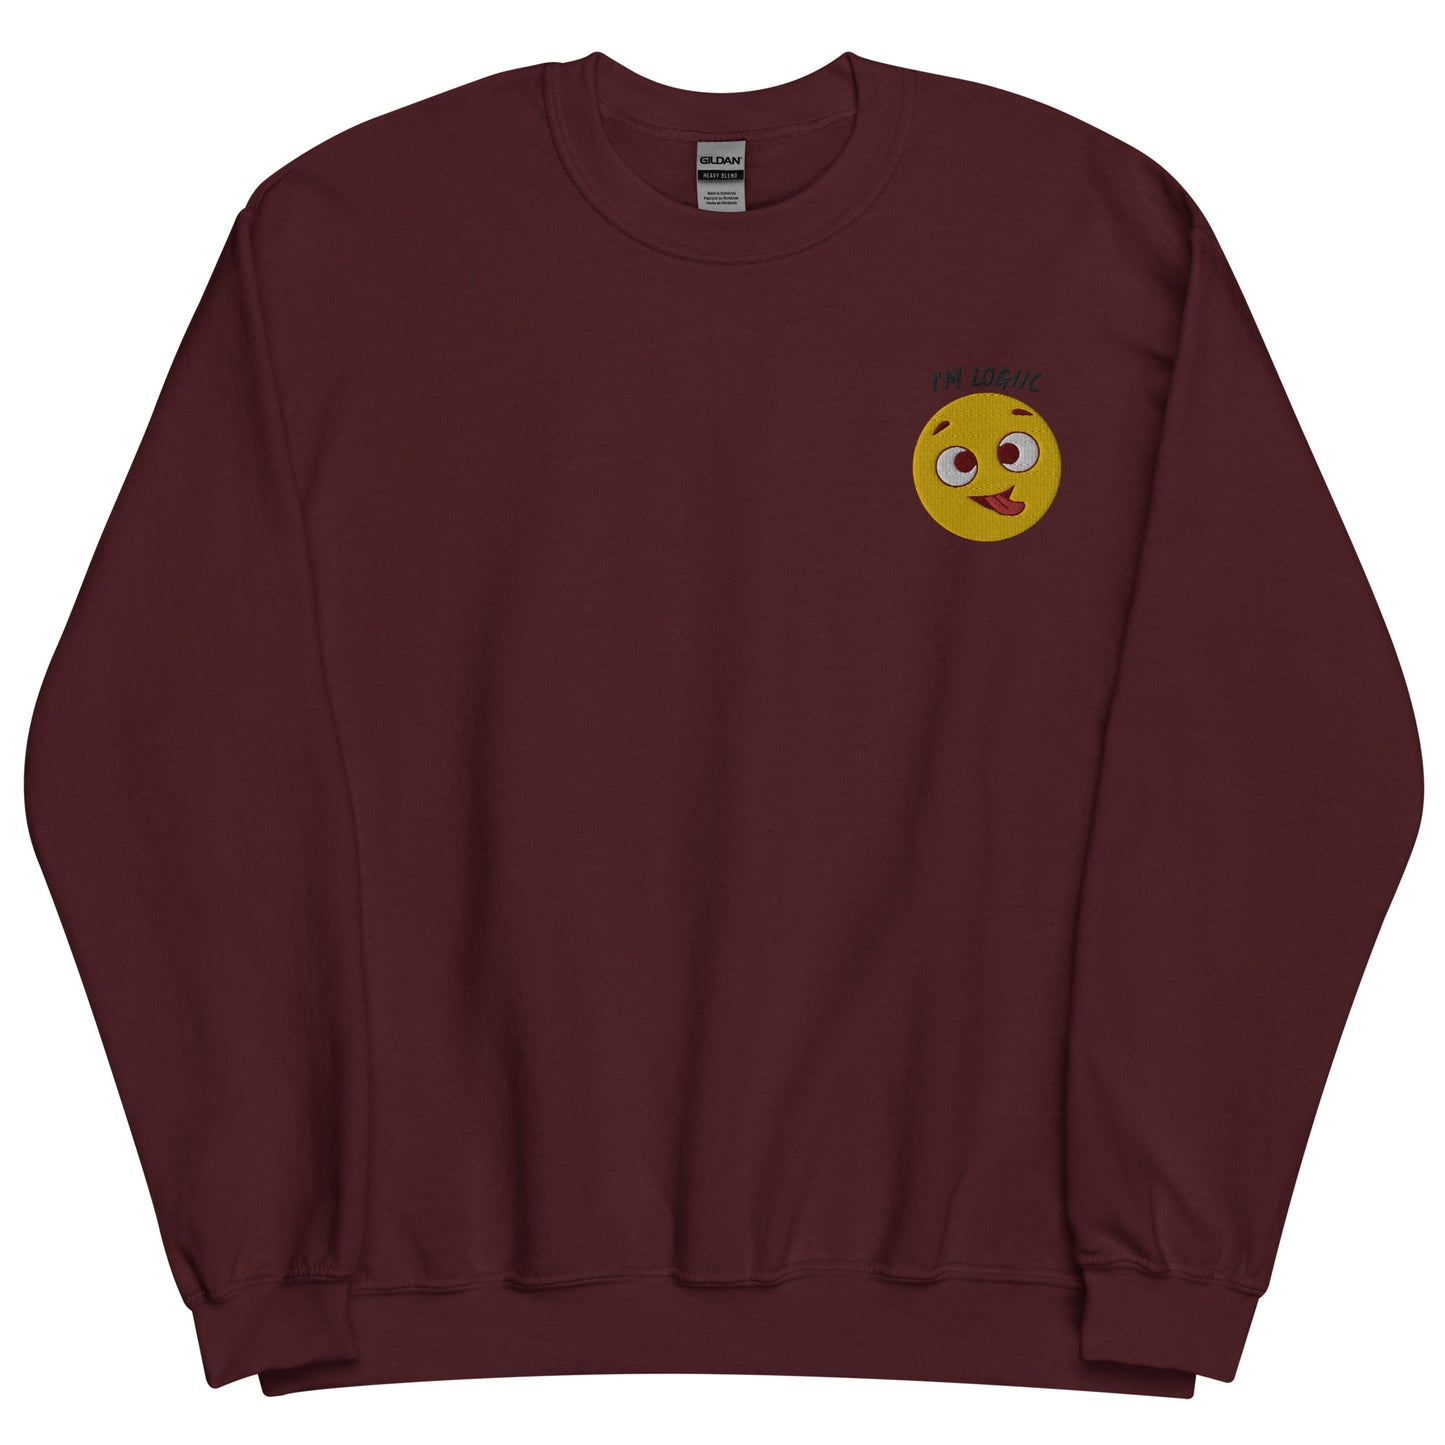 Silly Face Unisex Sweatshirt - Maroon / S